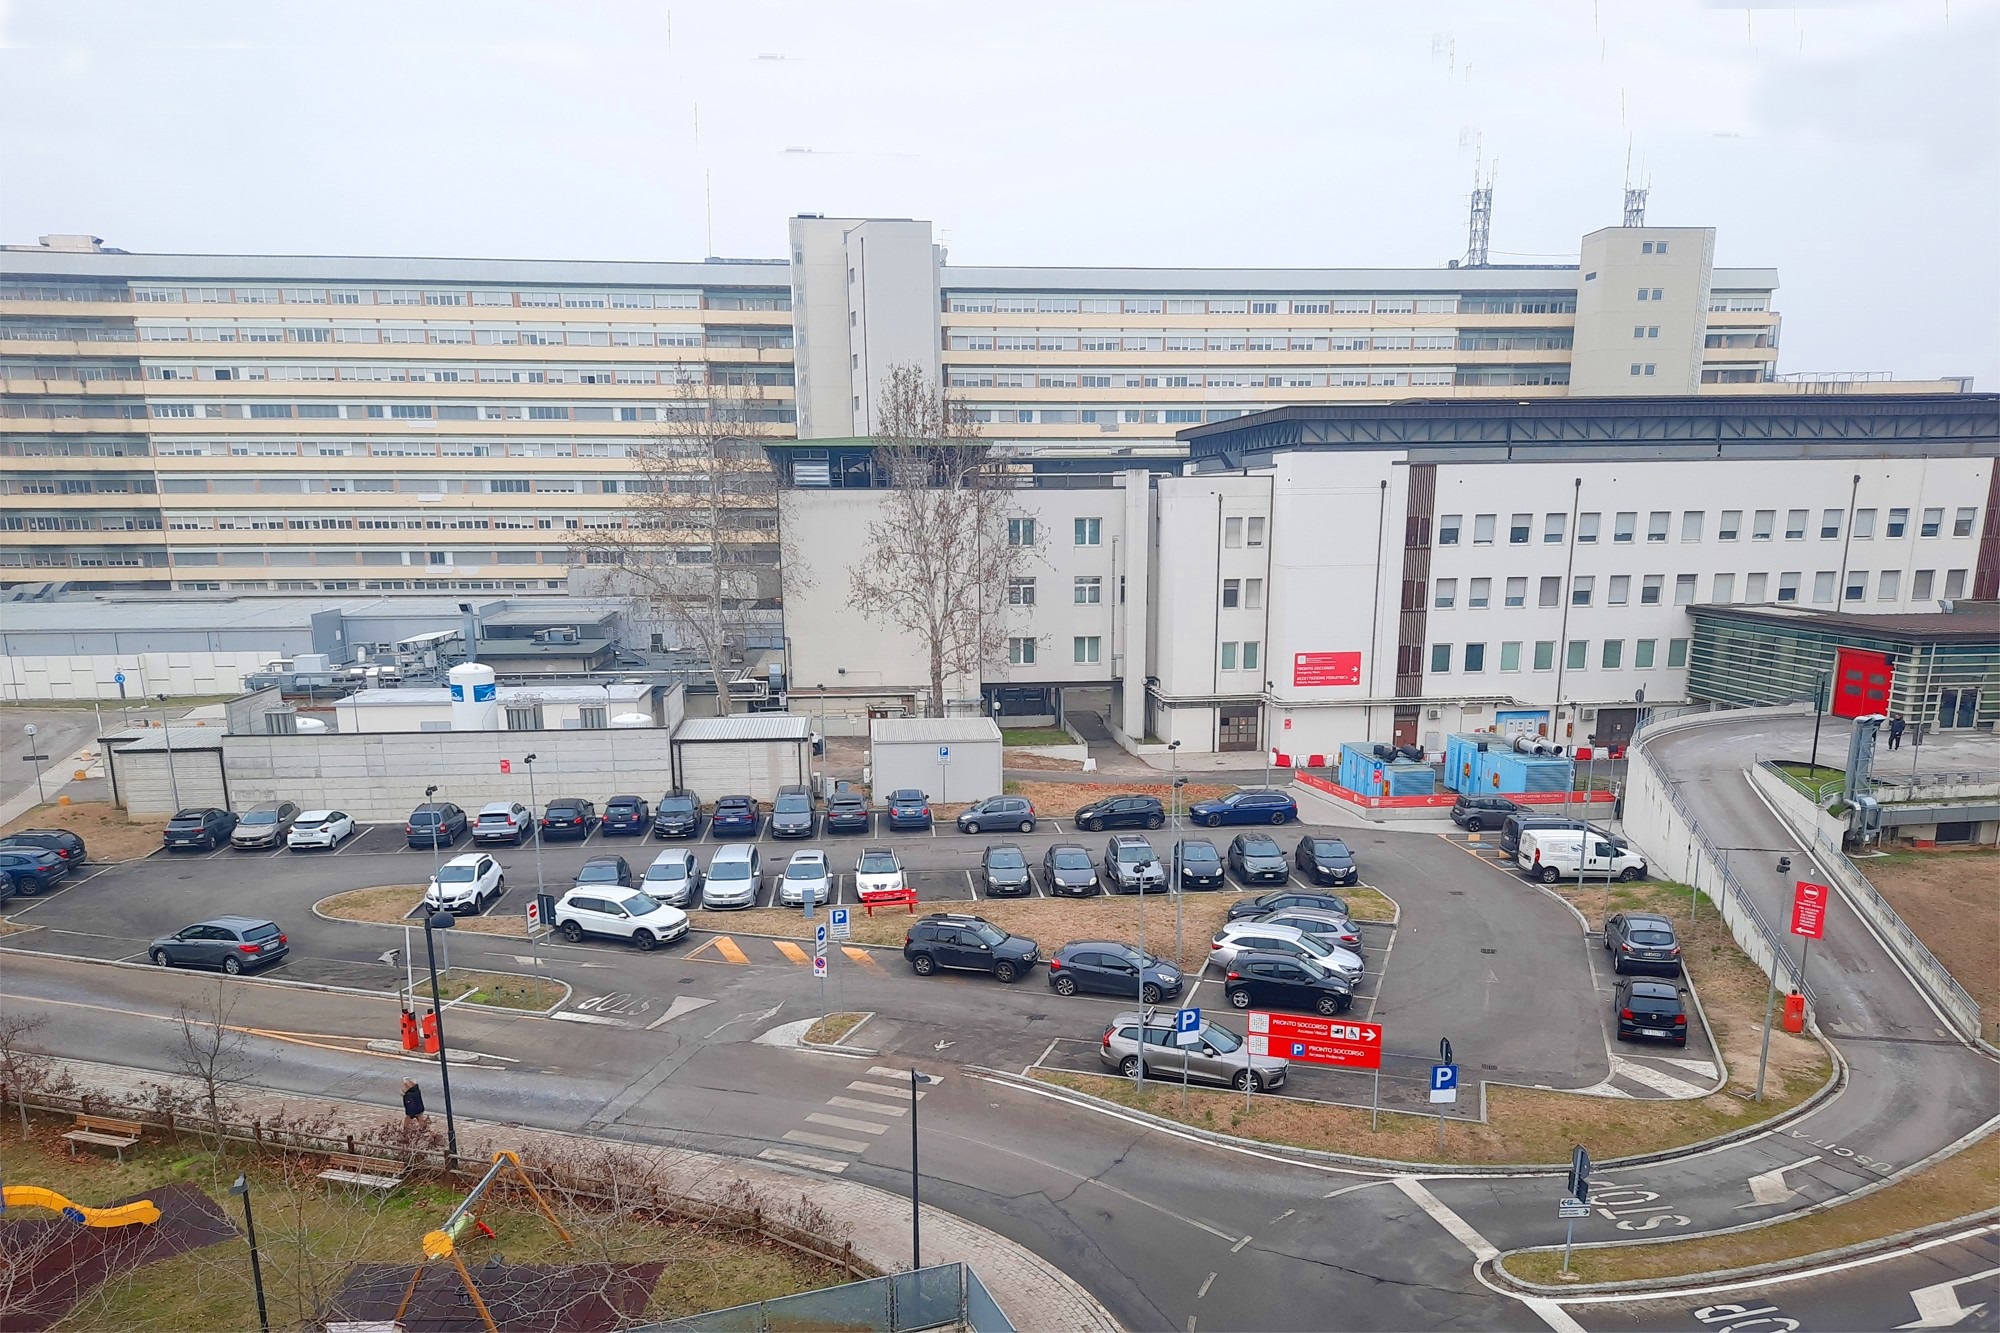 L'area del parcheggio del pronto soccorso del Policlinico di Modena interessata.